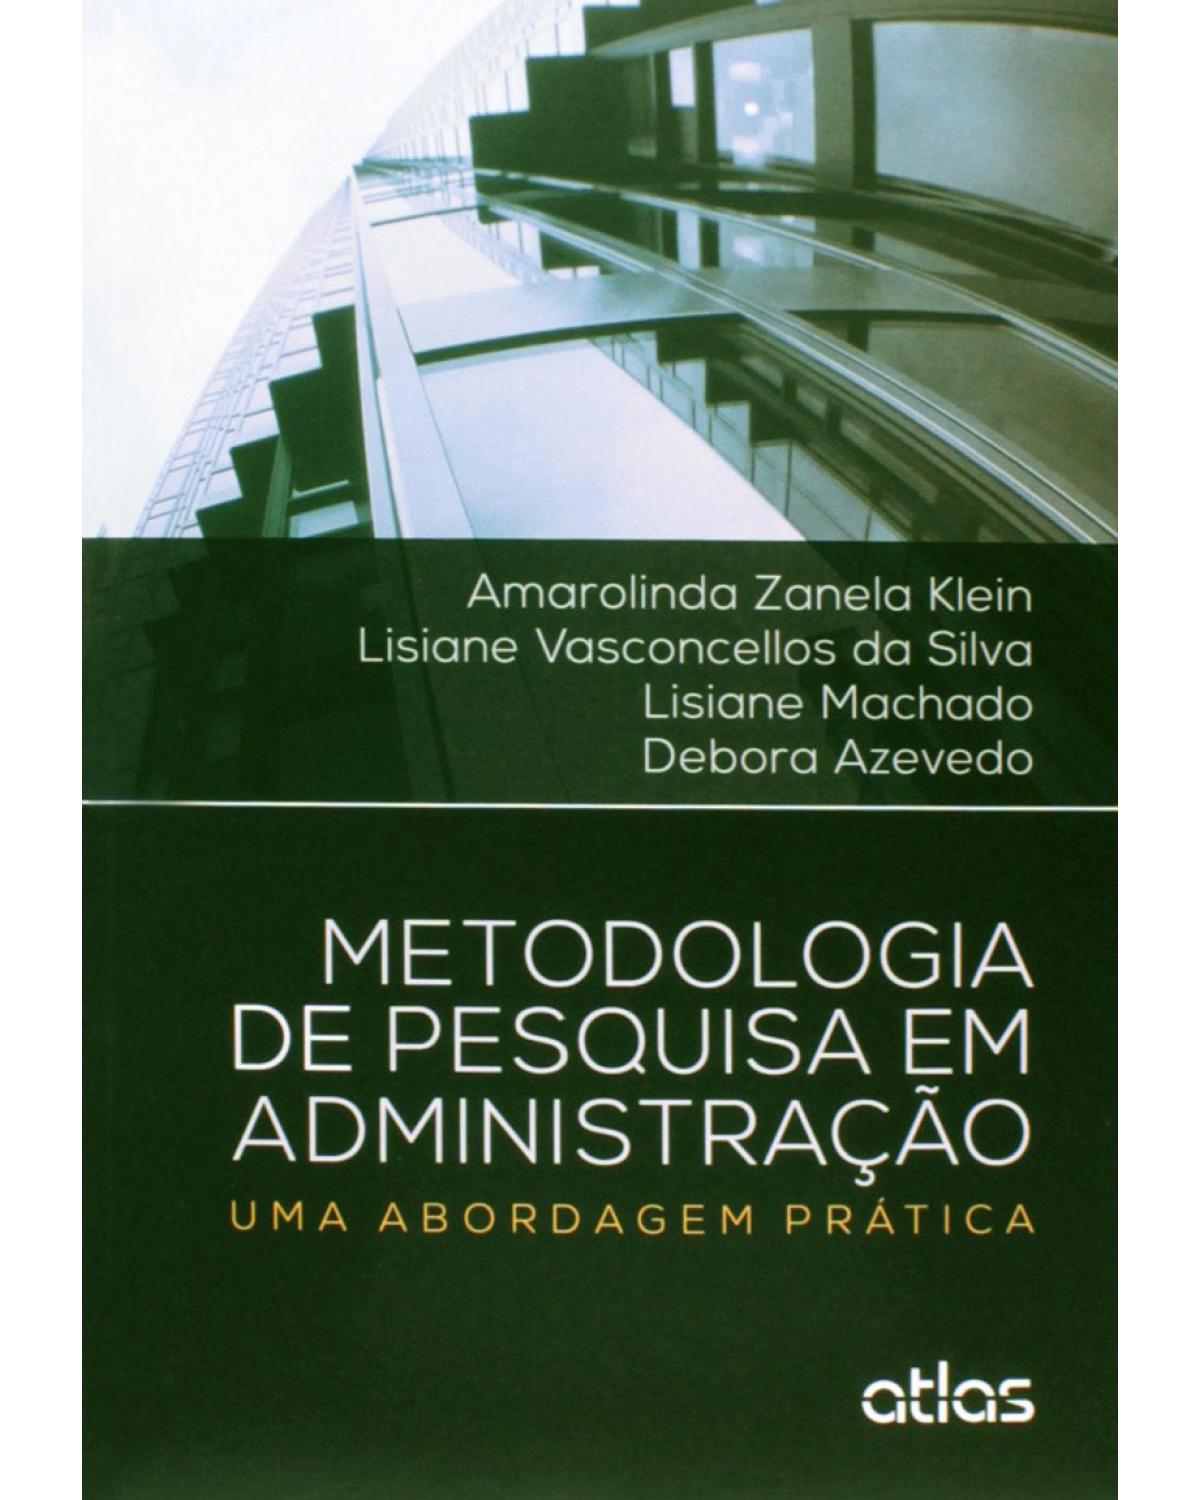 Metodologia de pesquisa em administração - Uma abordagem prática - 1ª Edição | 2015